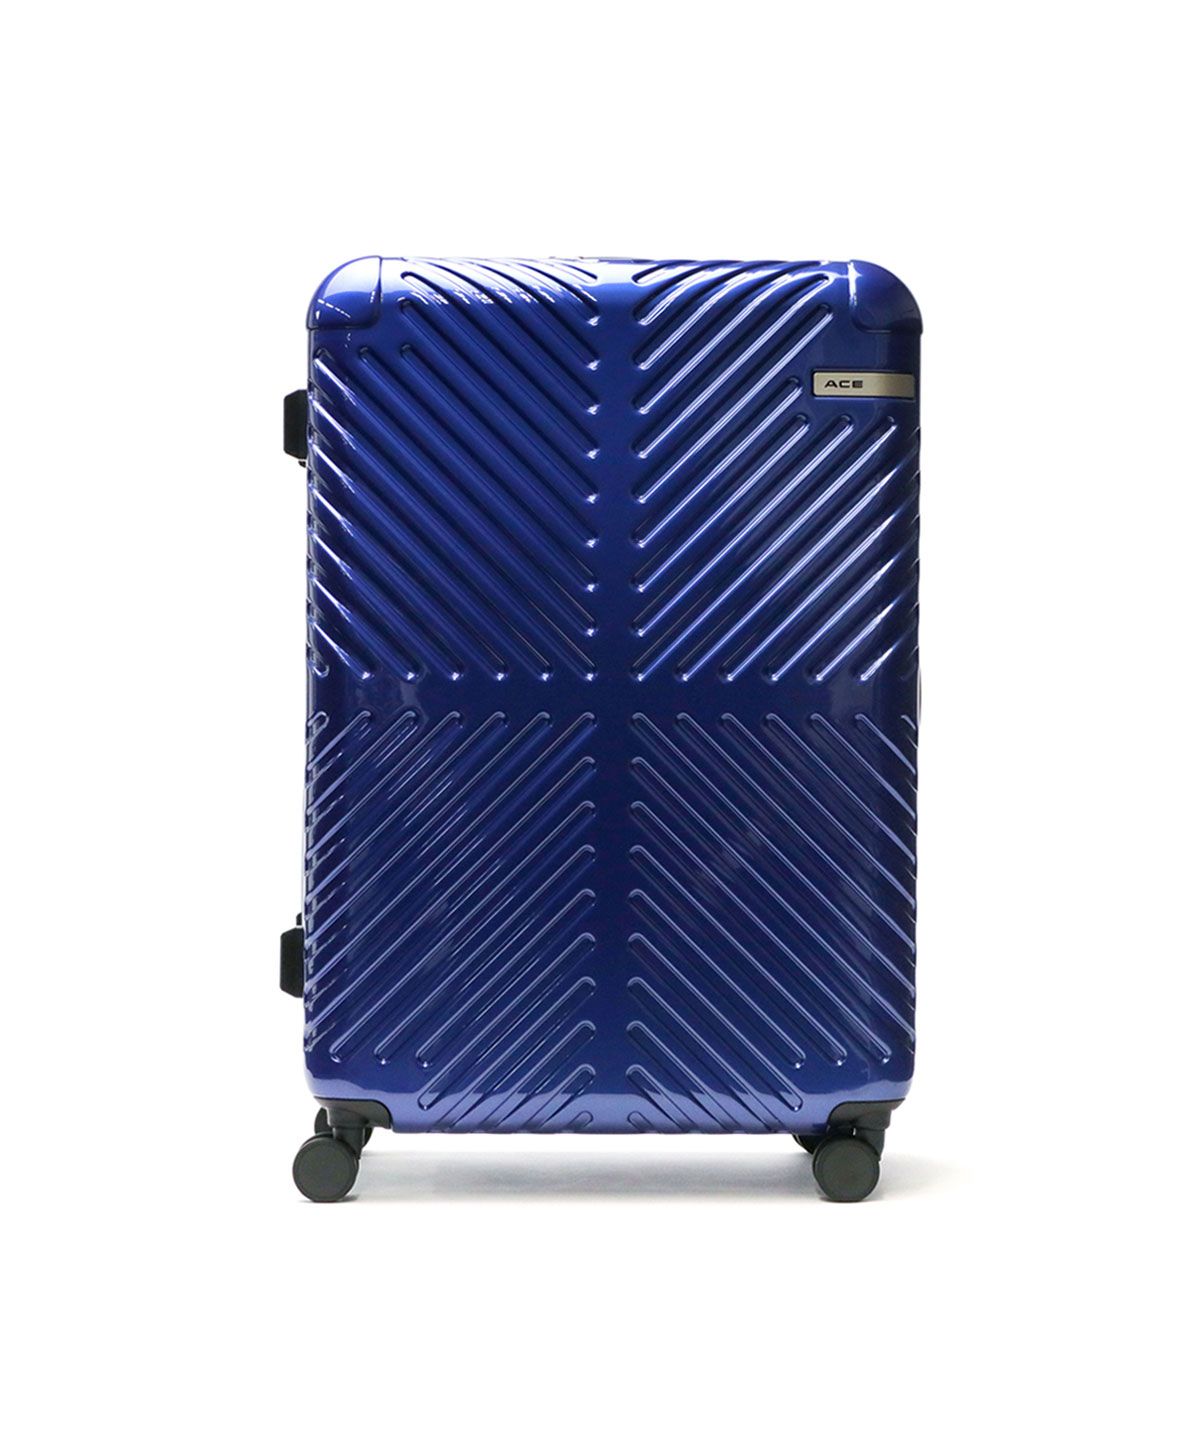 キャリーバッグ・スーツケース(ブルー・ネイビー・青色)のファッション 